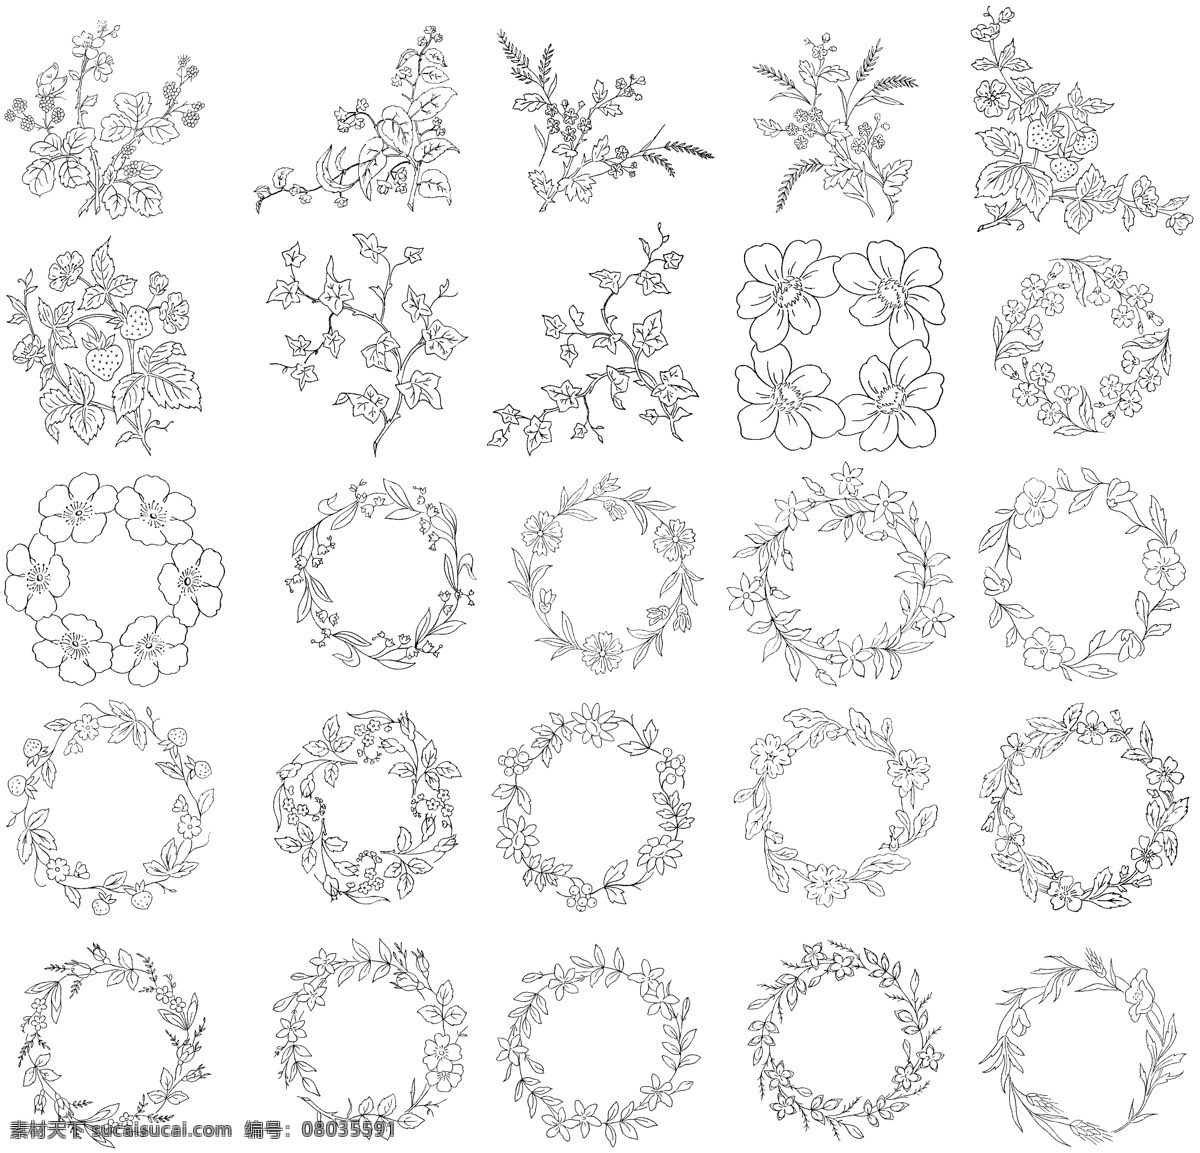 白描 花卉 植物 线 稿 线稿 实用 秘密花园 漫画 相关 底纹边框 花边花纹